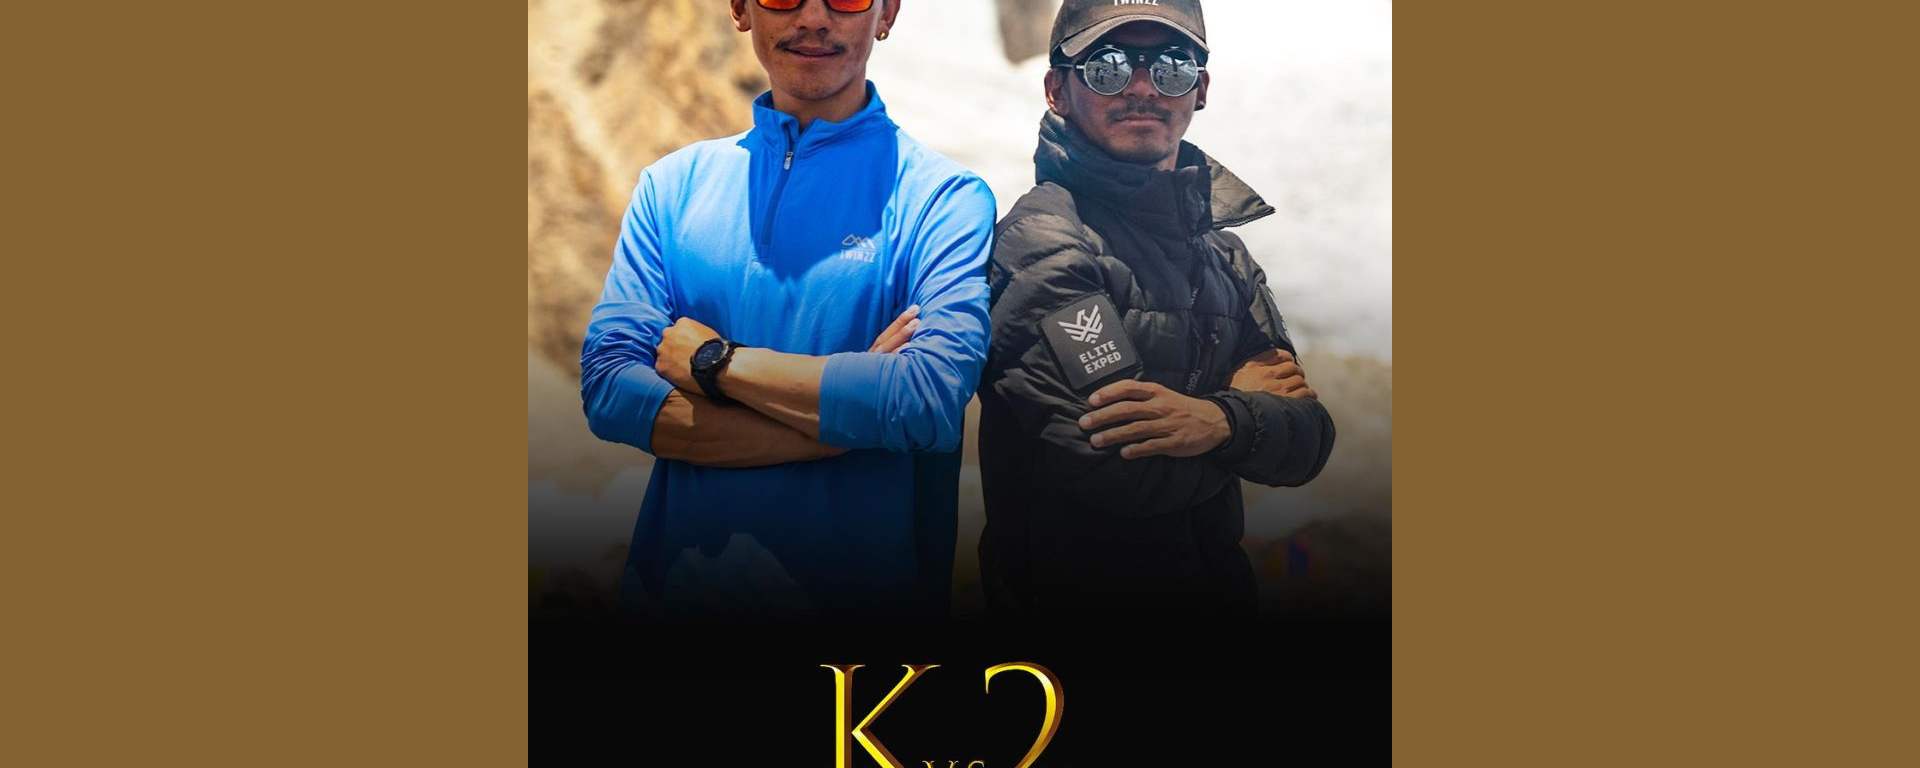 Lakpa Dendi Sherpa i Mingma David Sherpa pobijają rekord szybkości wejścia na K2